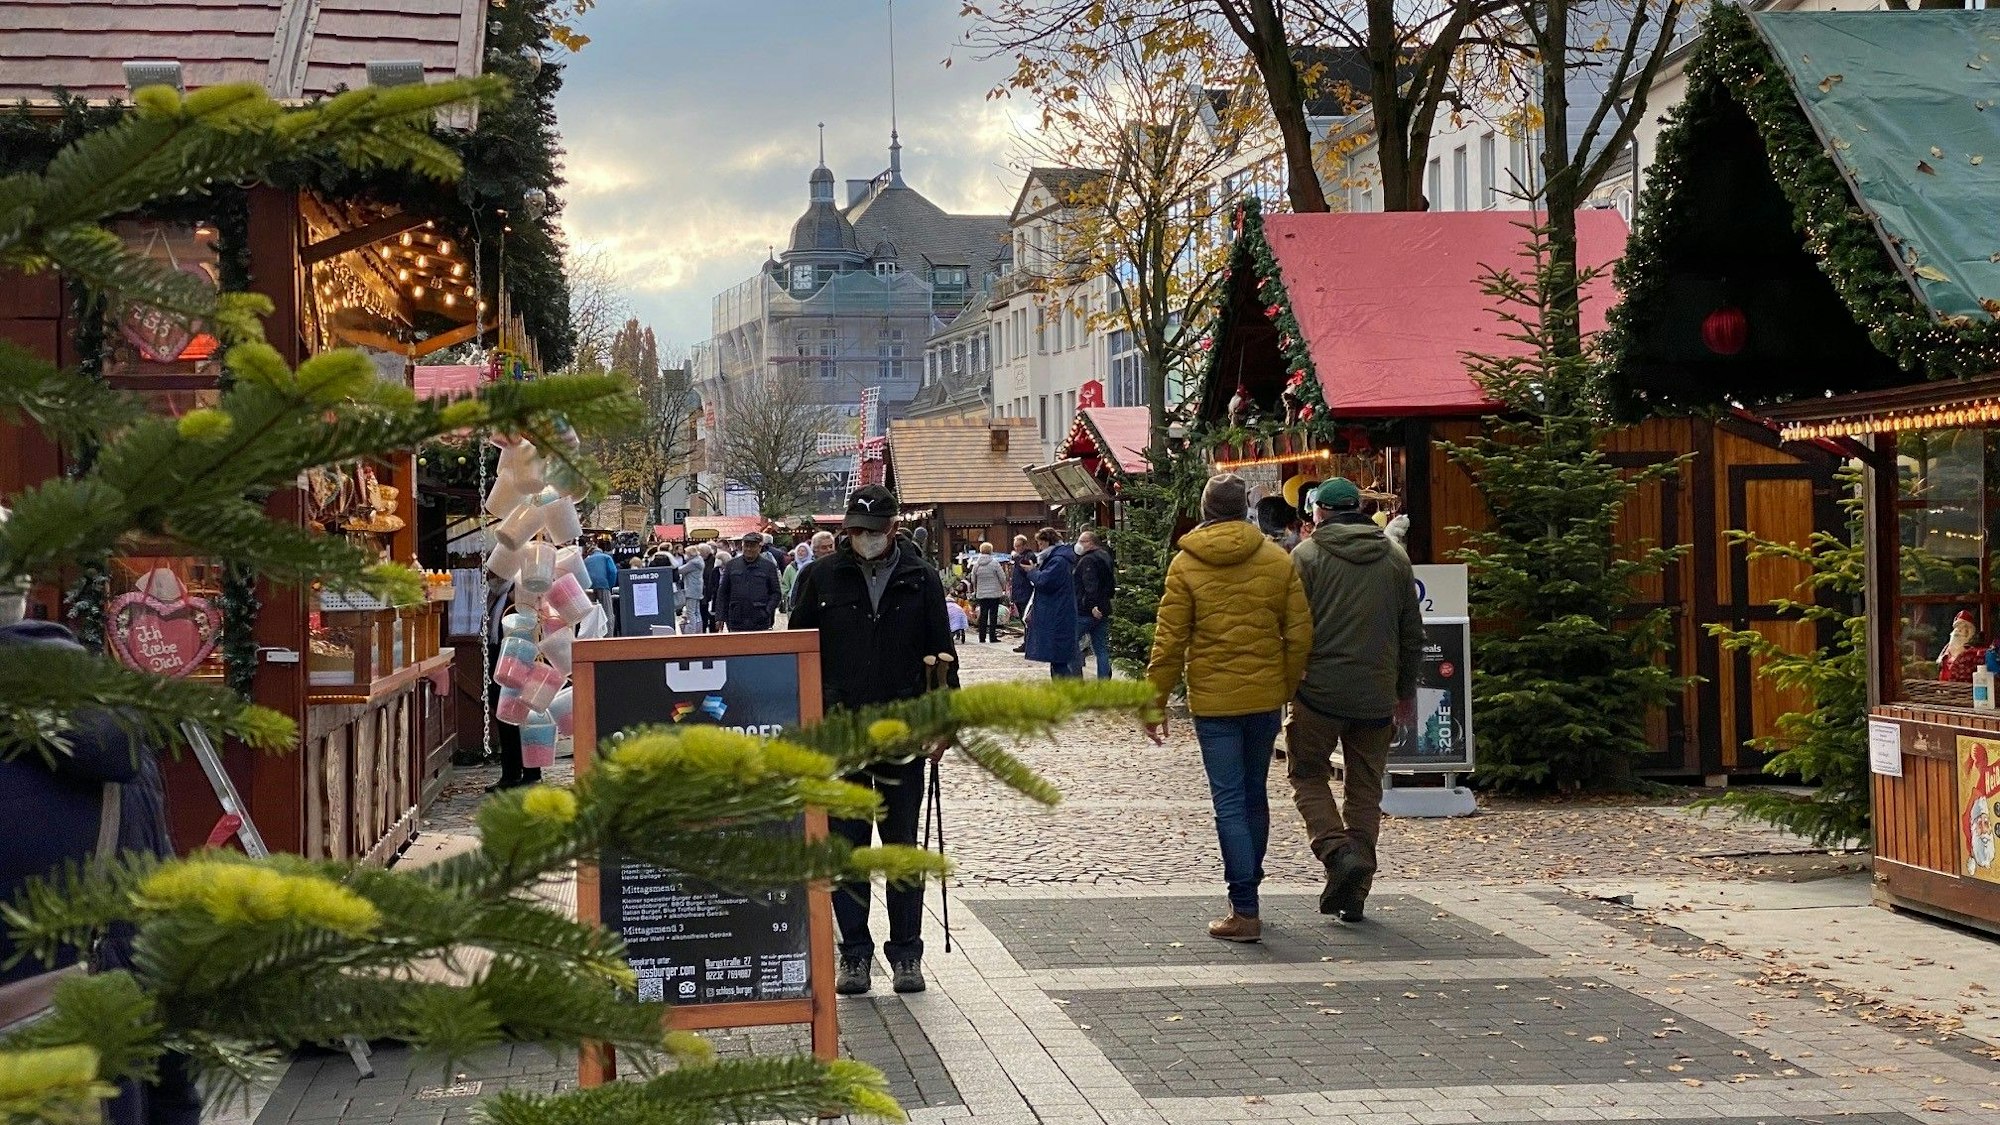 Weihnachtsmarktbuden aus Holz mit geschmückten Dächern reichen sich über den Marktplatz. Menschen schlendern zwischen ihnen umher.